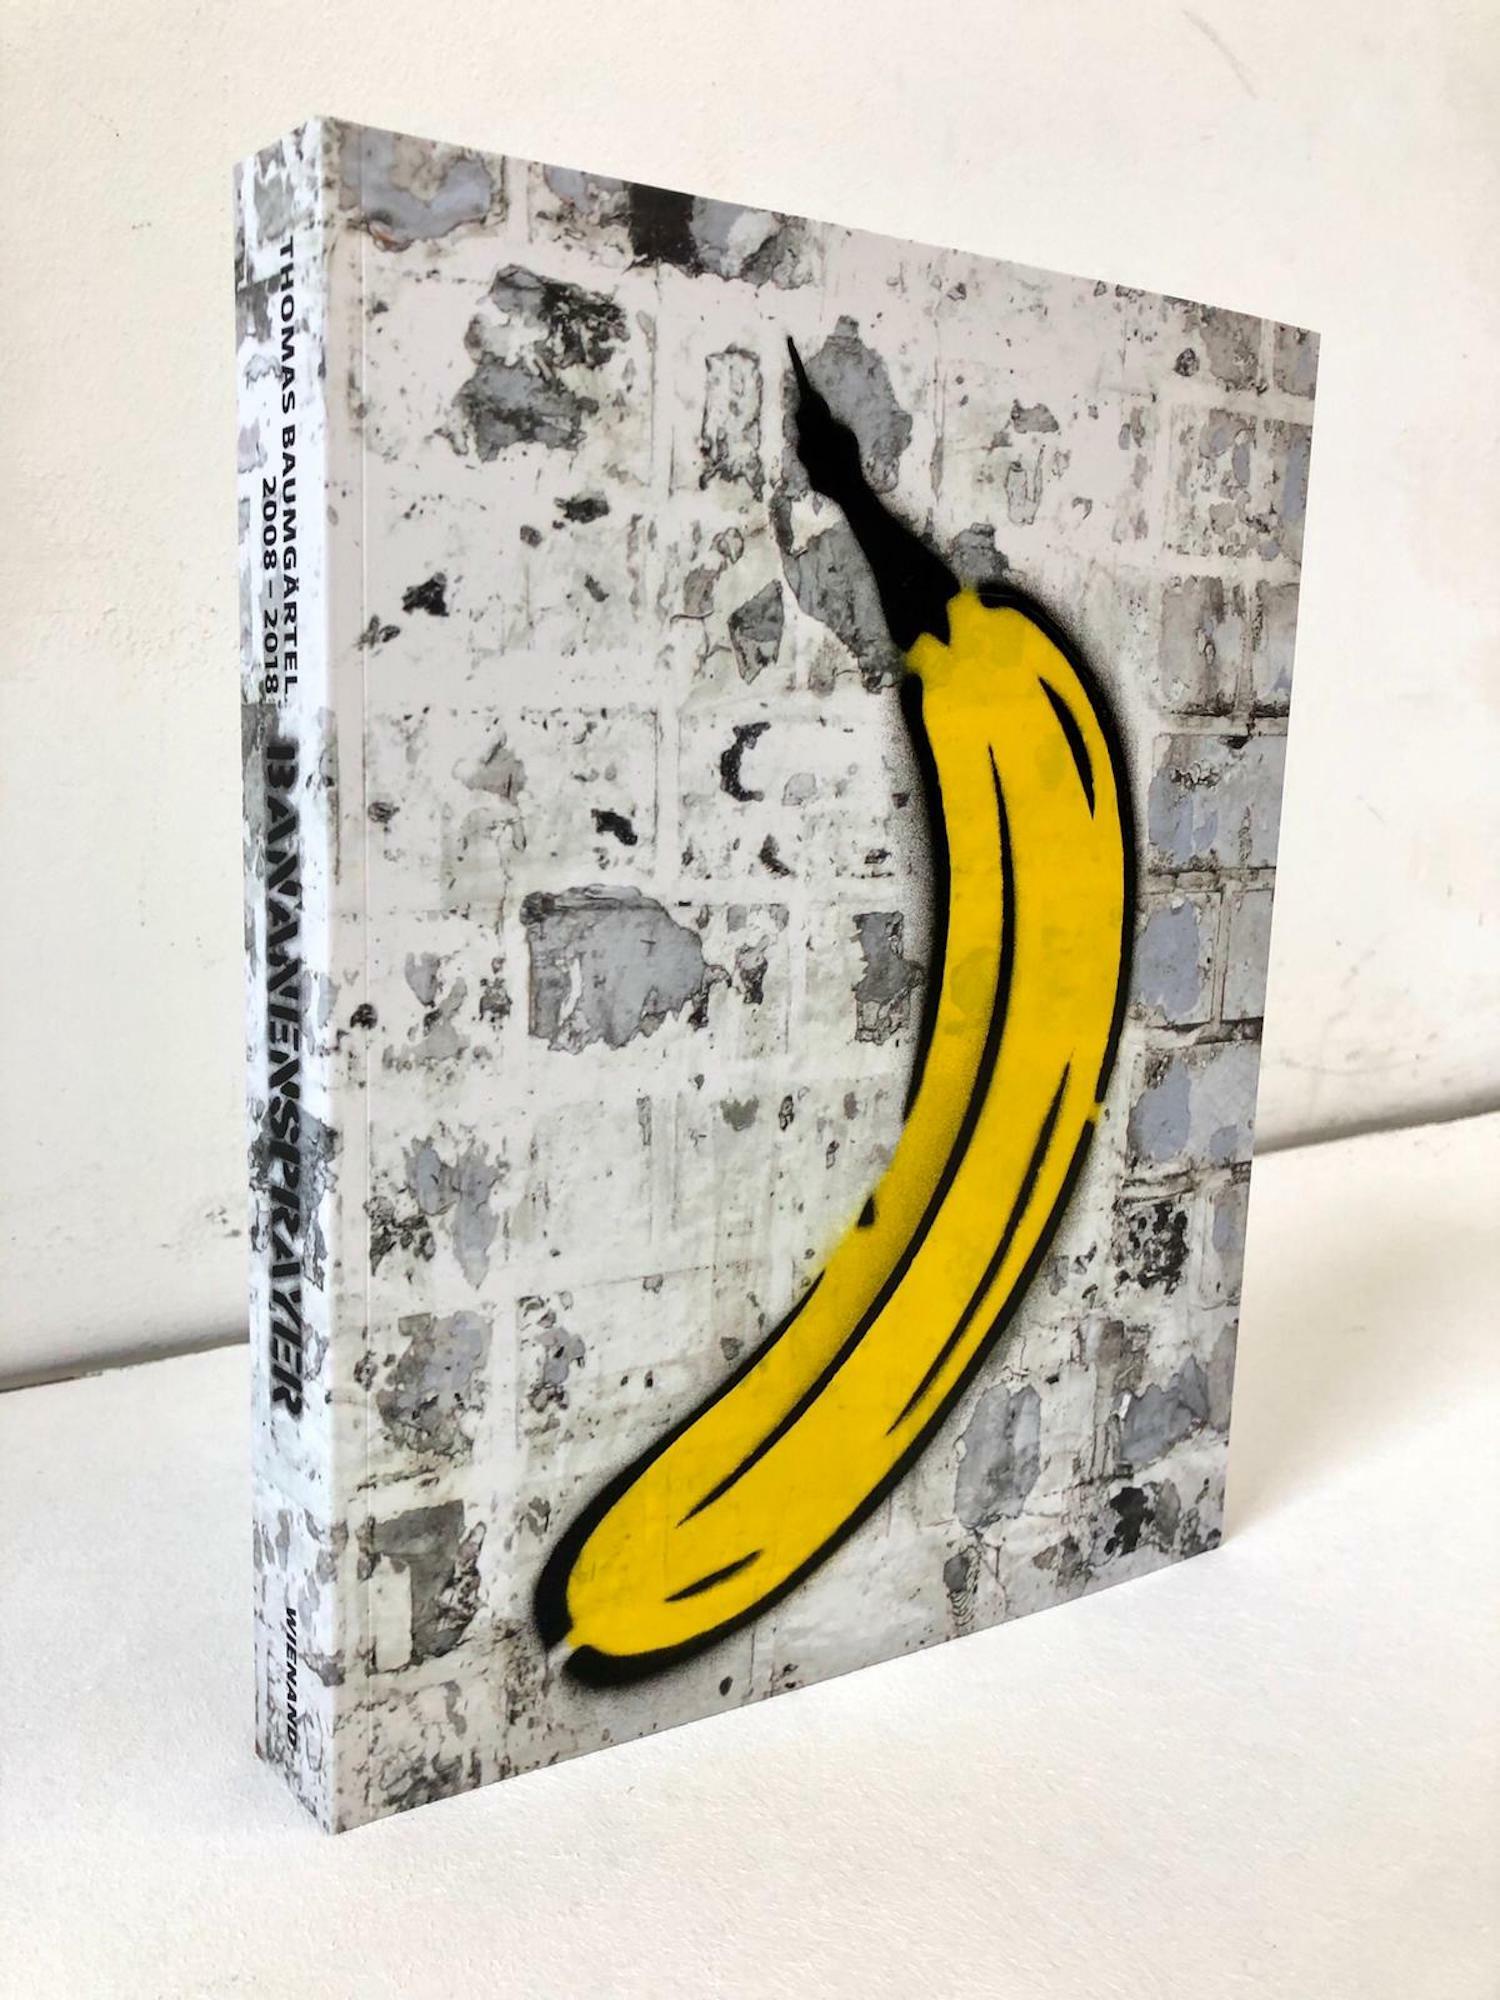 Objekt "Bog med håndsprøjtet banan" (2019) von Thomas Baumgärtel